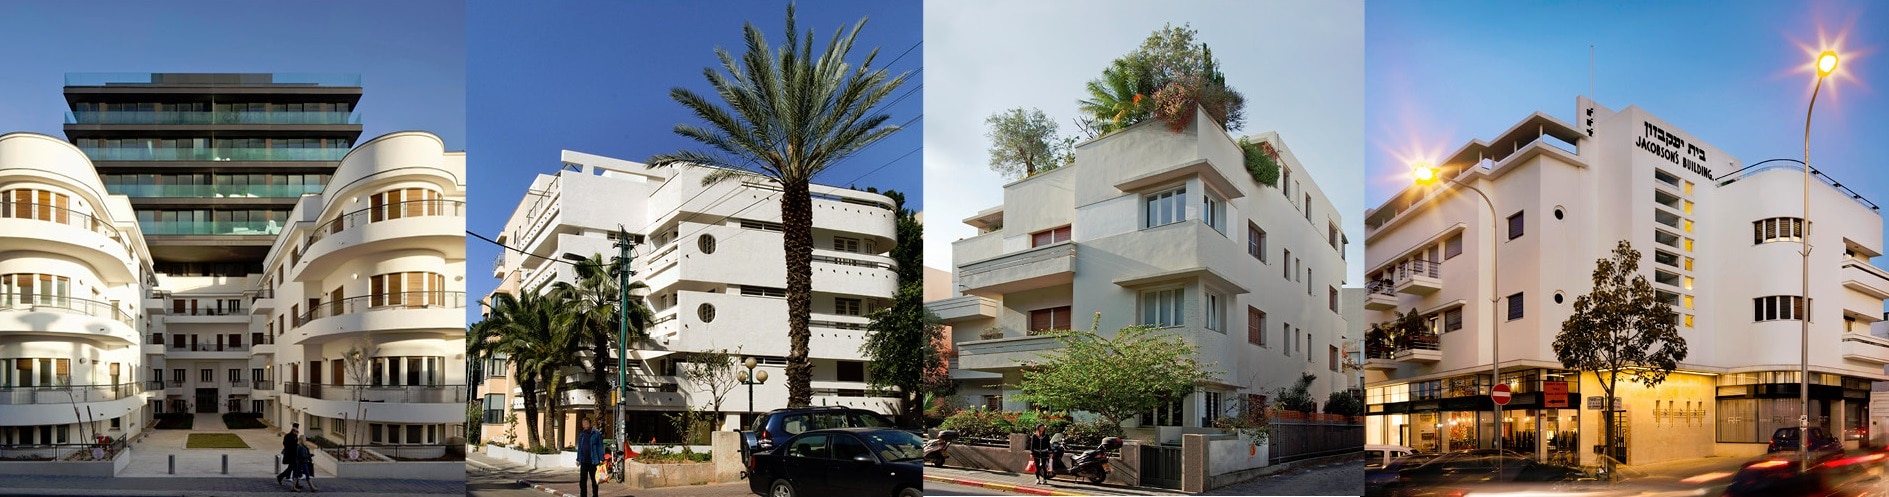 שימור והתחדשות: בנייני באוהאוס וסגנון בינלאומי בתל אביב